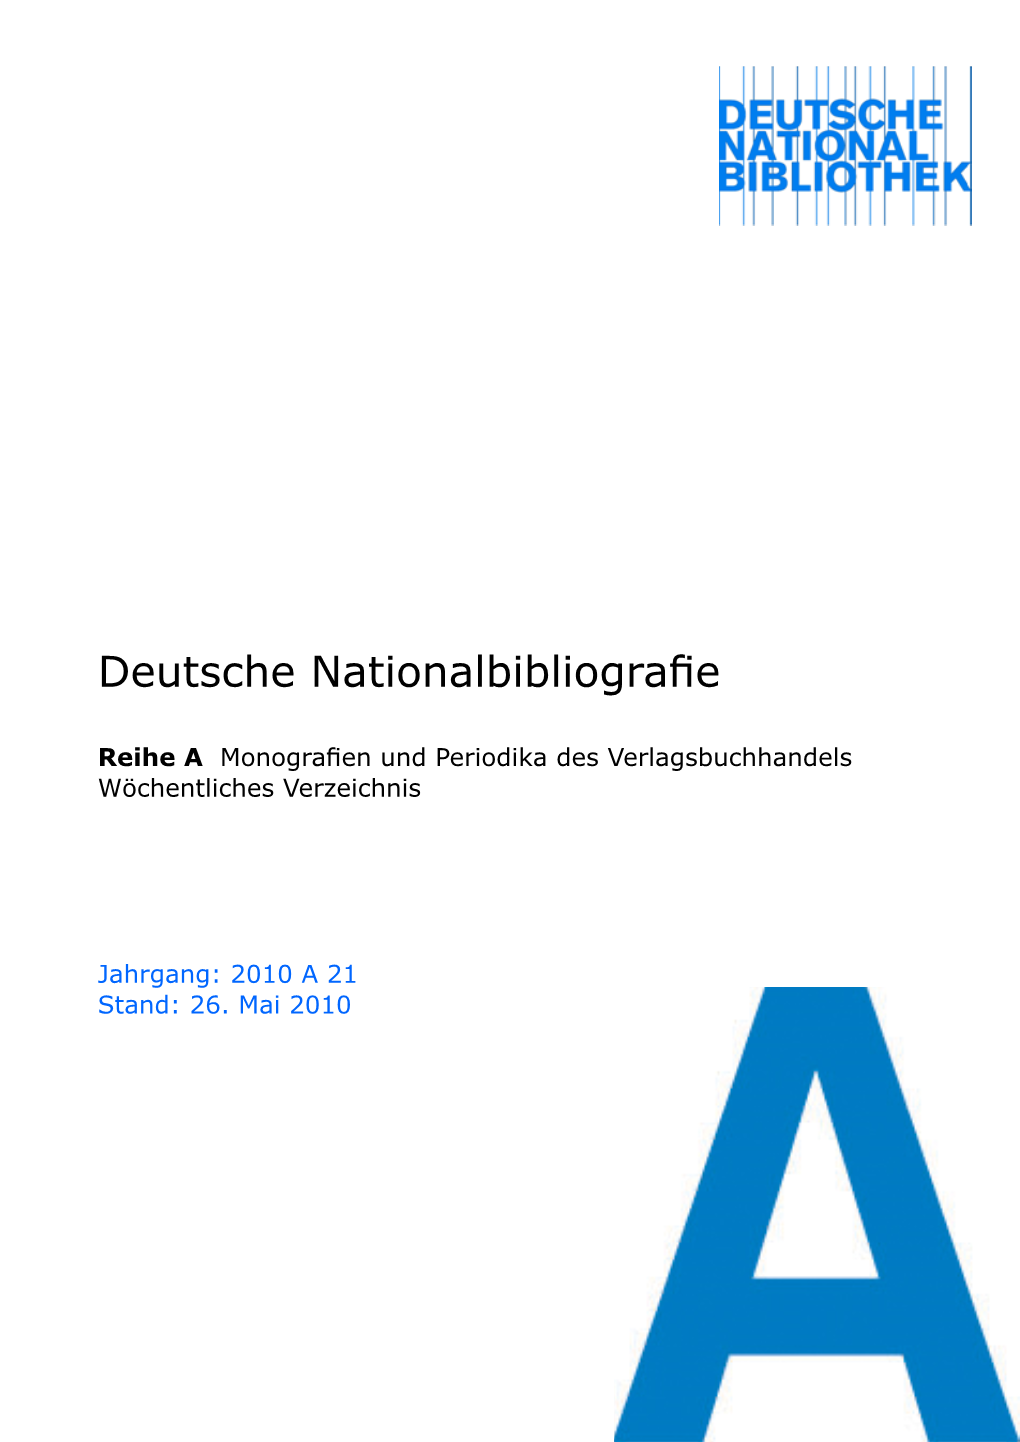 Deutsche Nationalbibliografie 2010 a 21